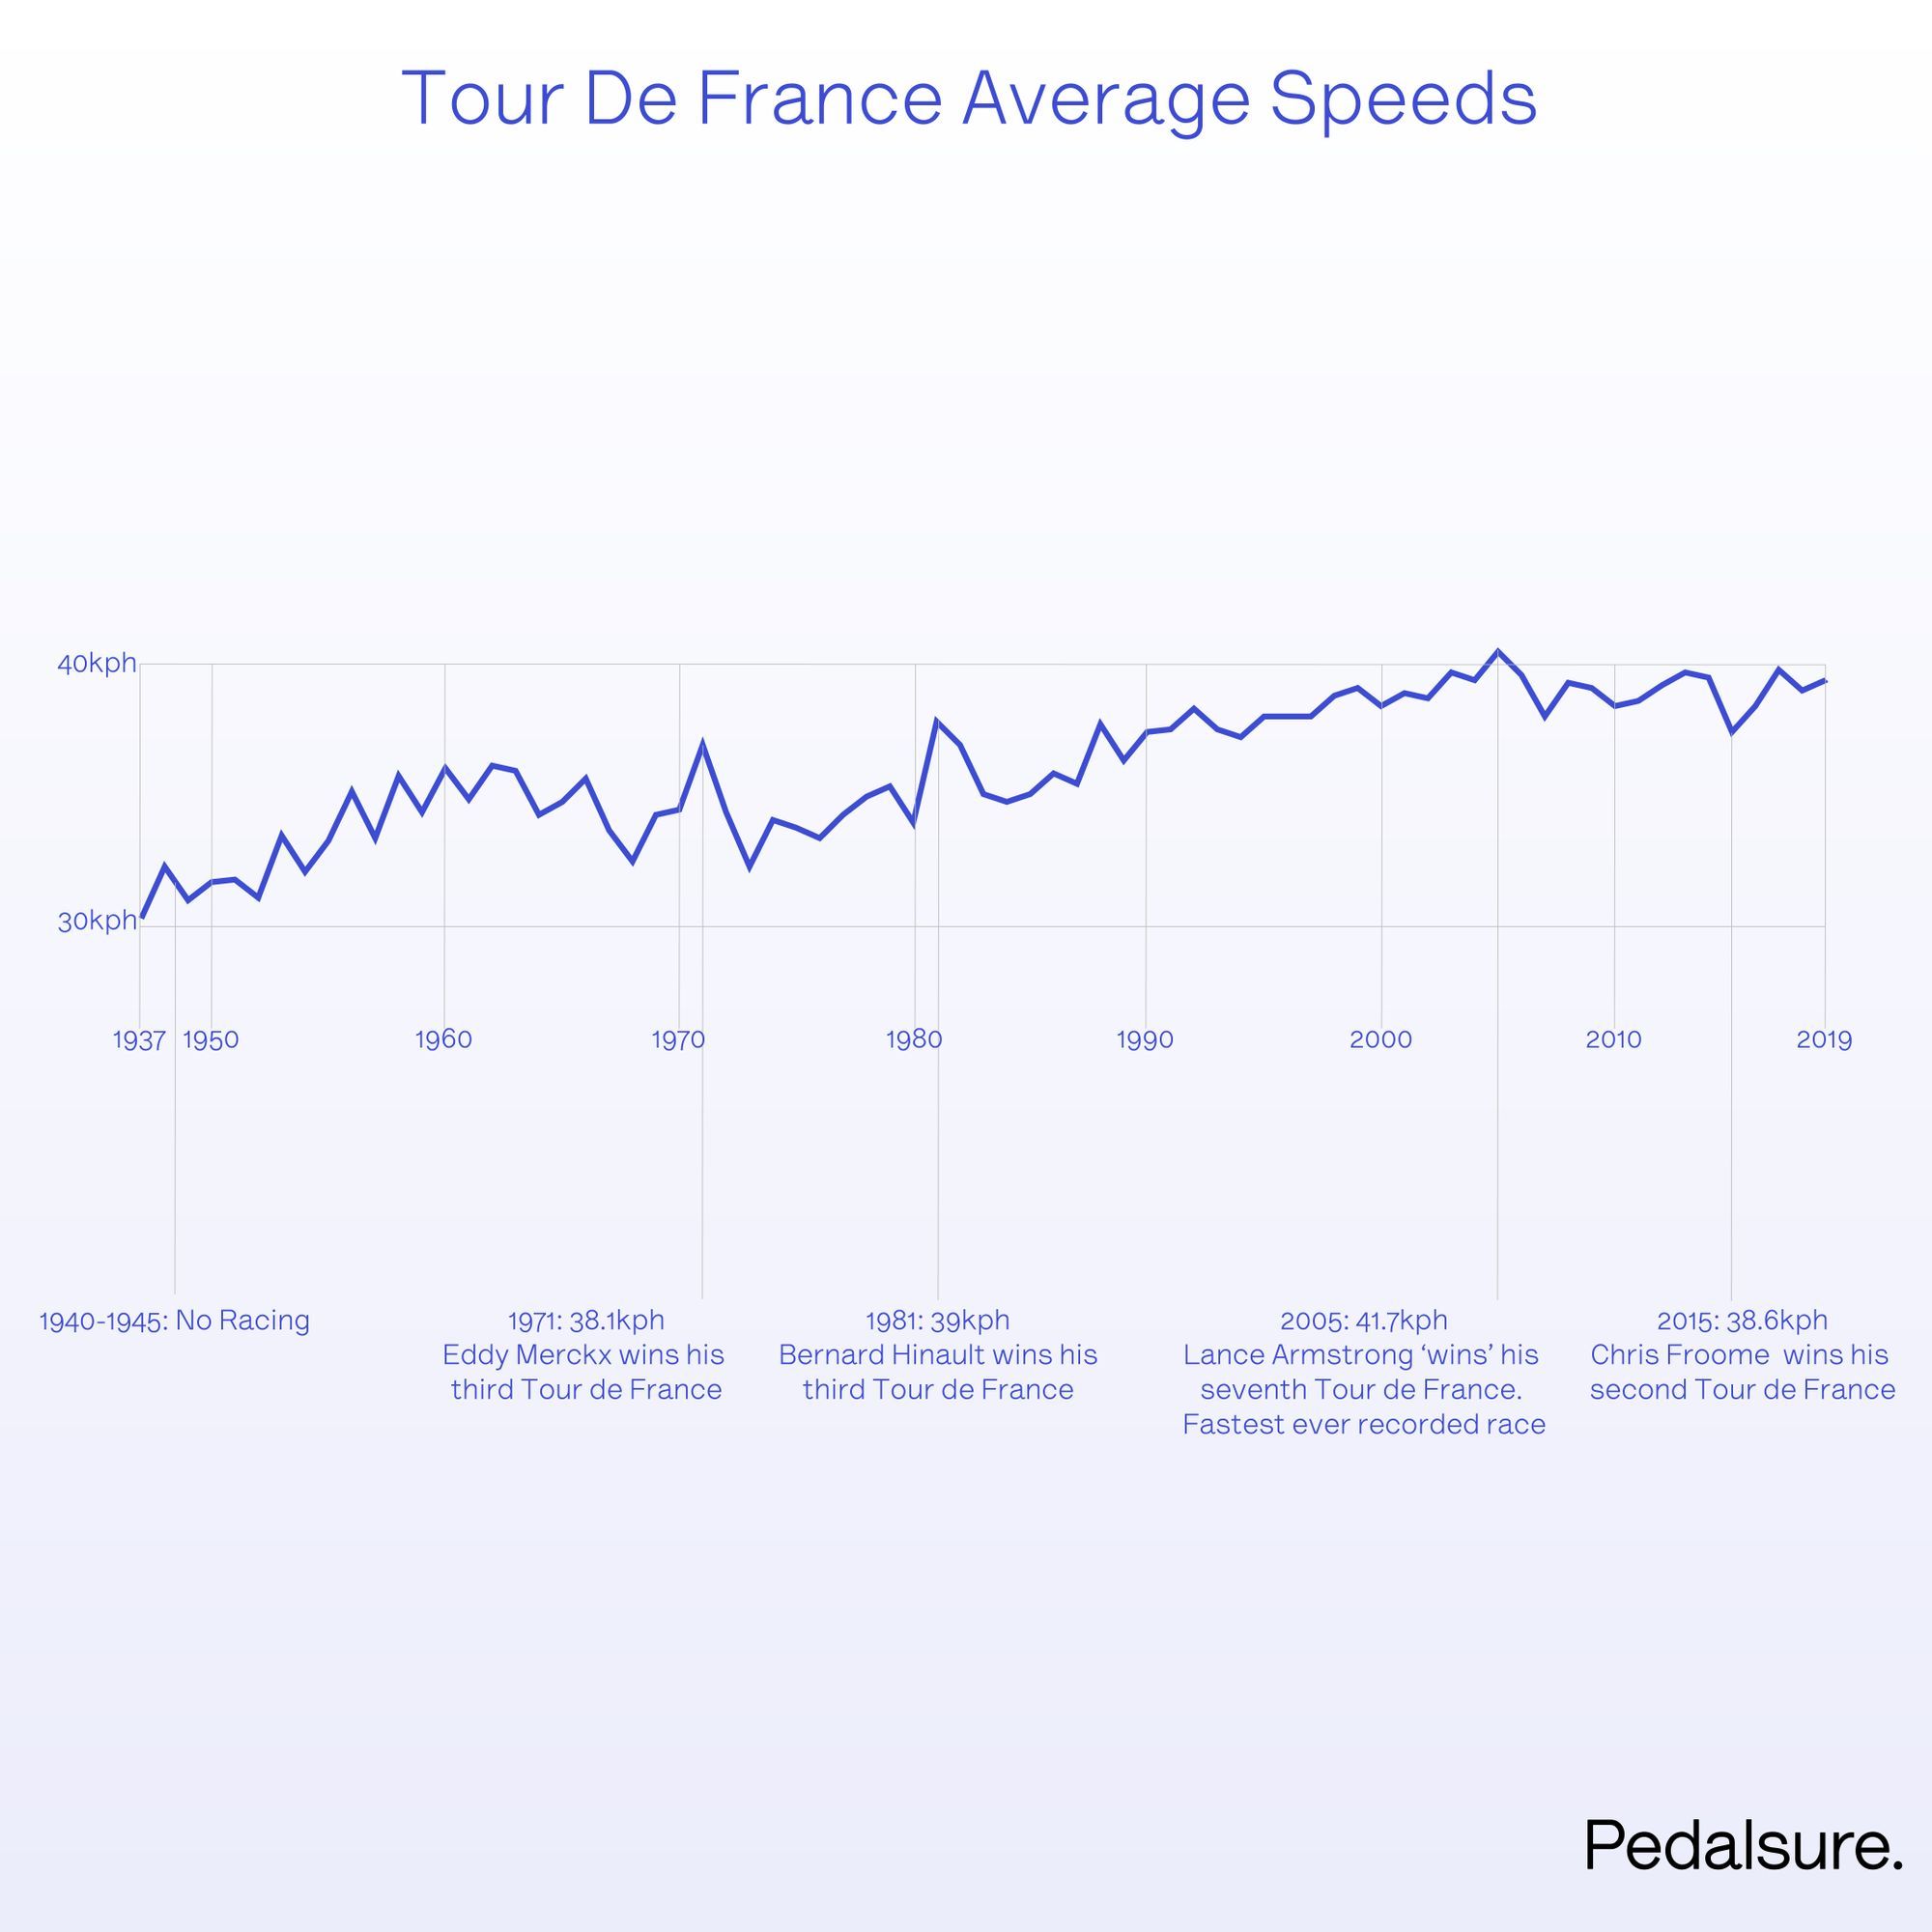 Tour de France average speeds